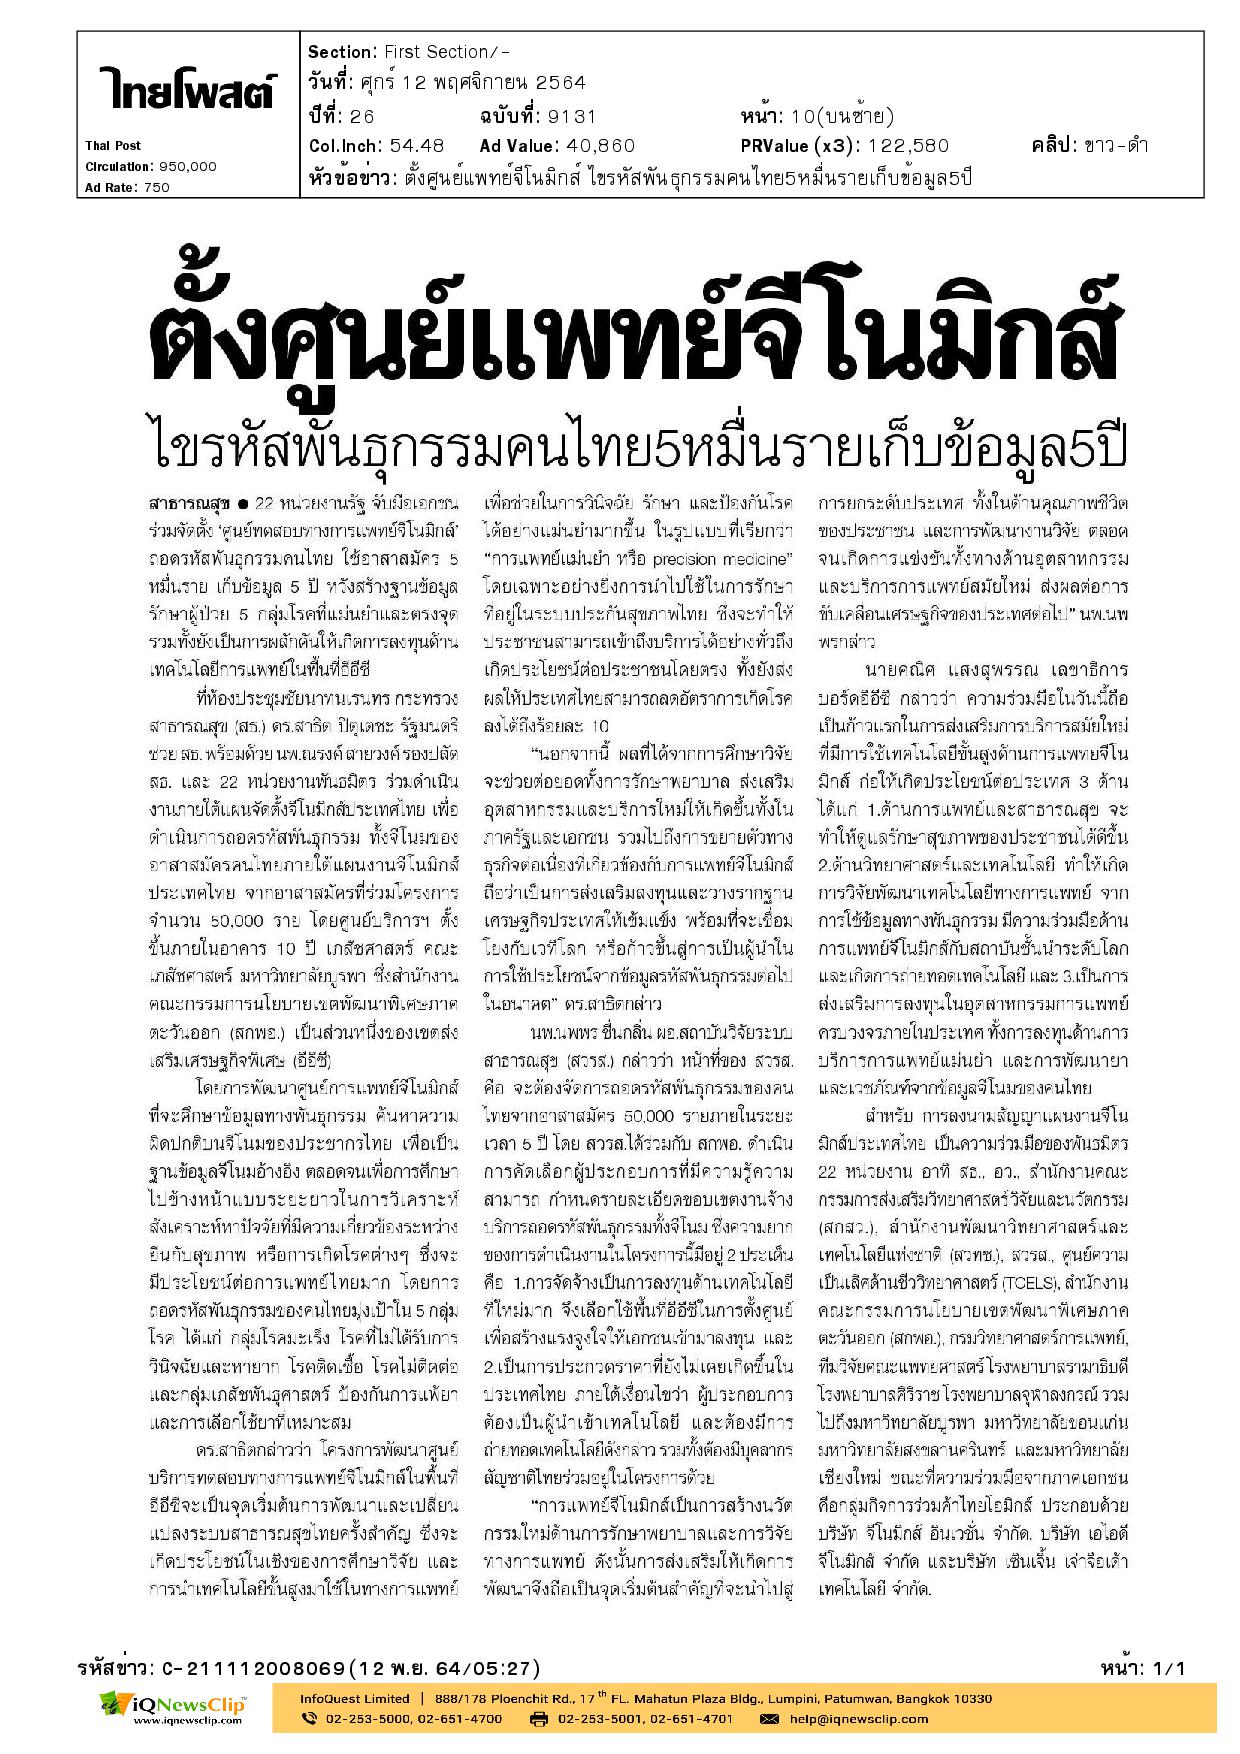 รพ.จุฬาฯ ร่วมลงนามในสัญญาแผนงานจีโนมิกส์ประเทศไทย